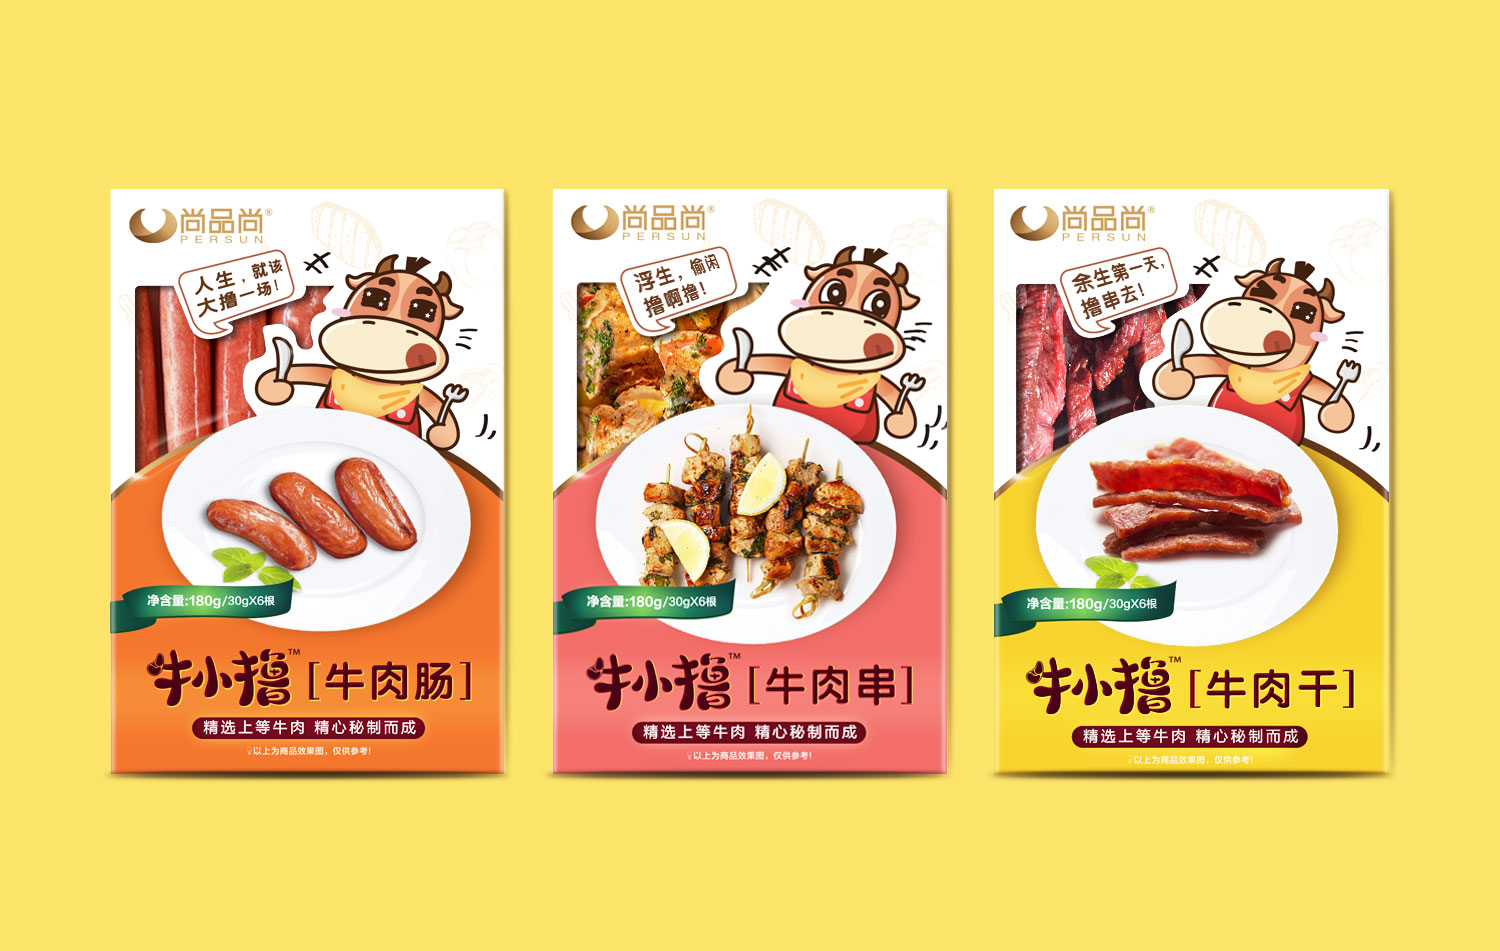 牛小撸牛肉类休闲小吃冷冻食品品牌包装设计